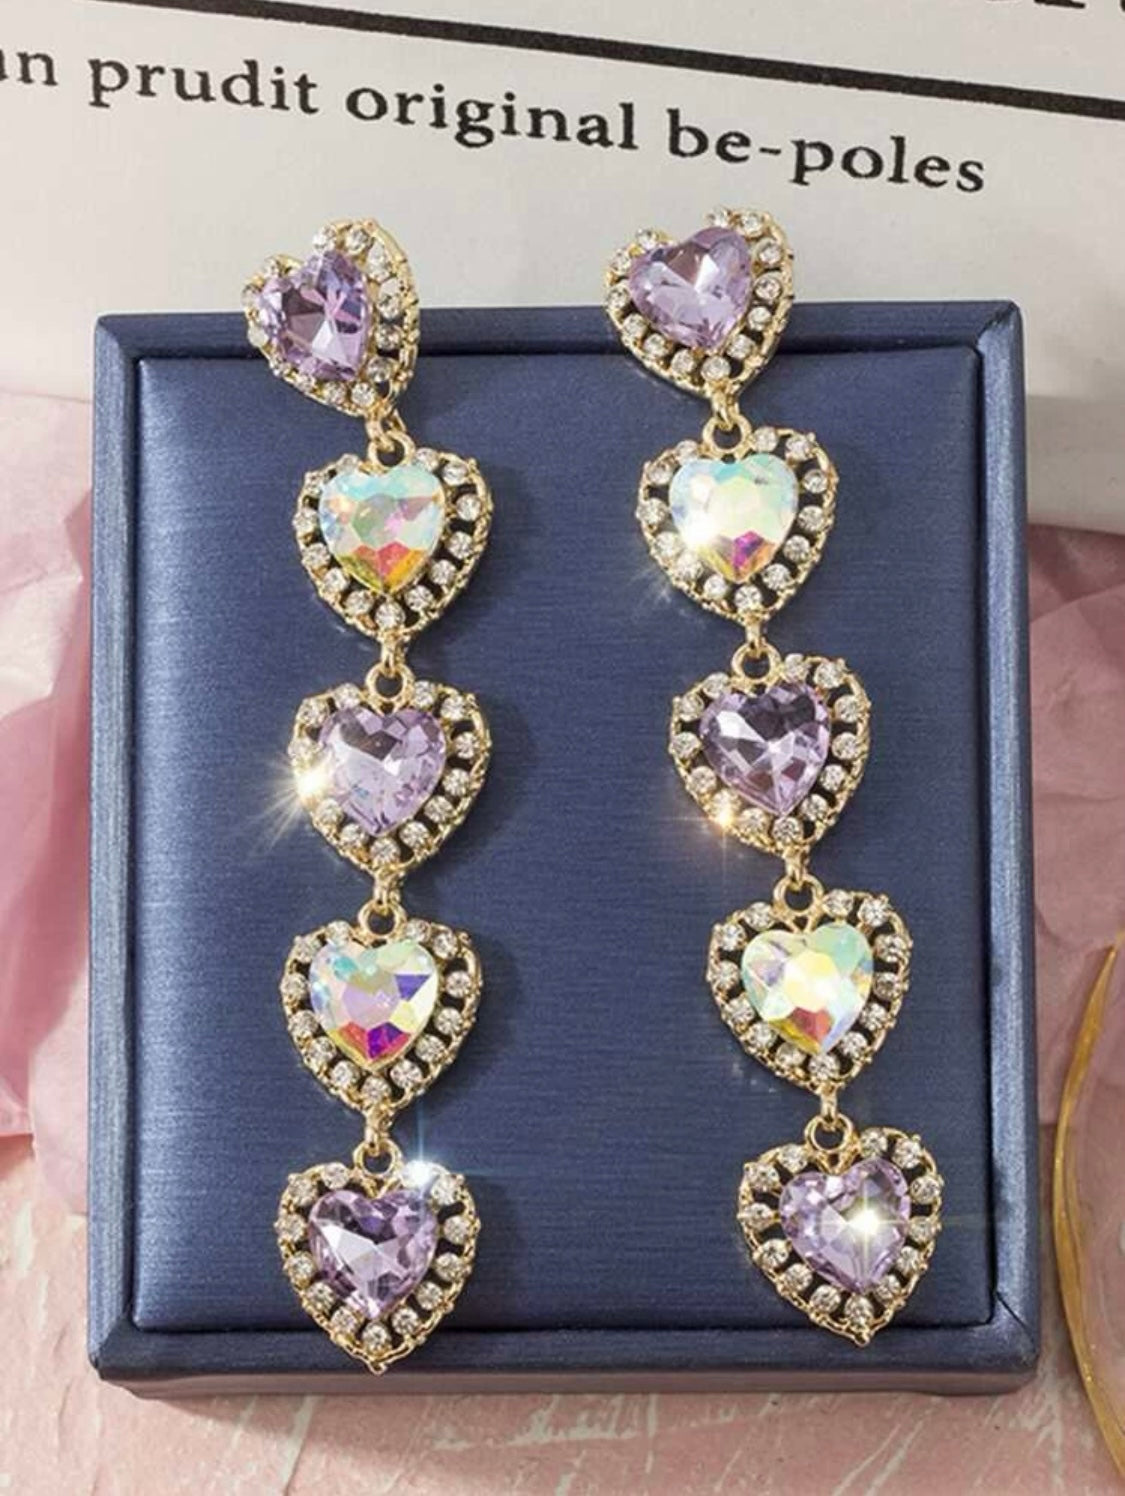 So Lovely Heart Earrings